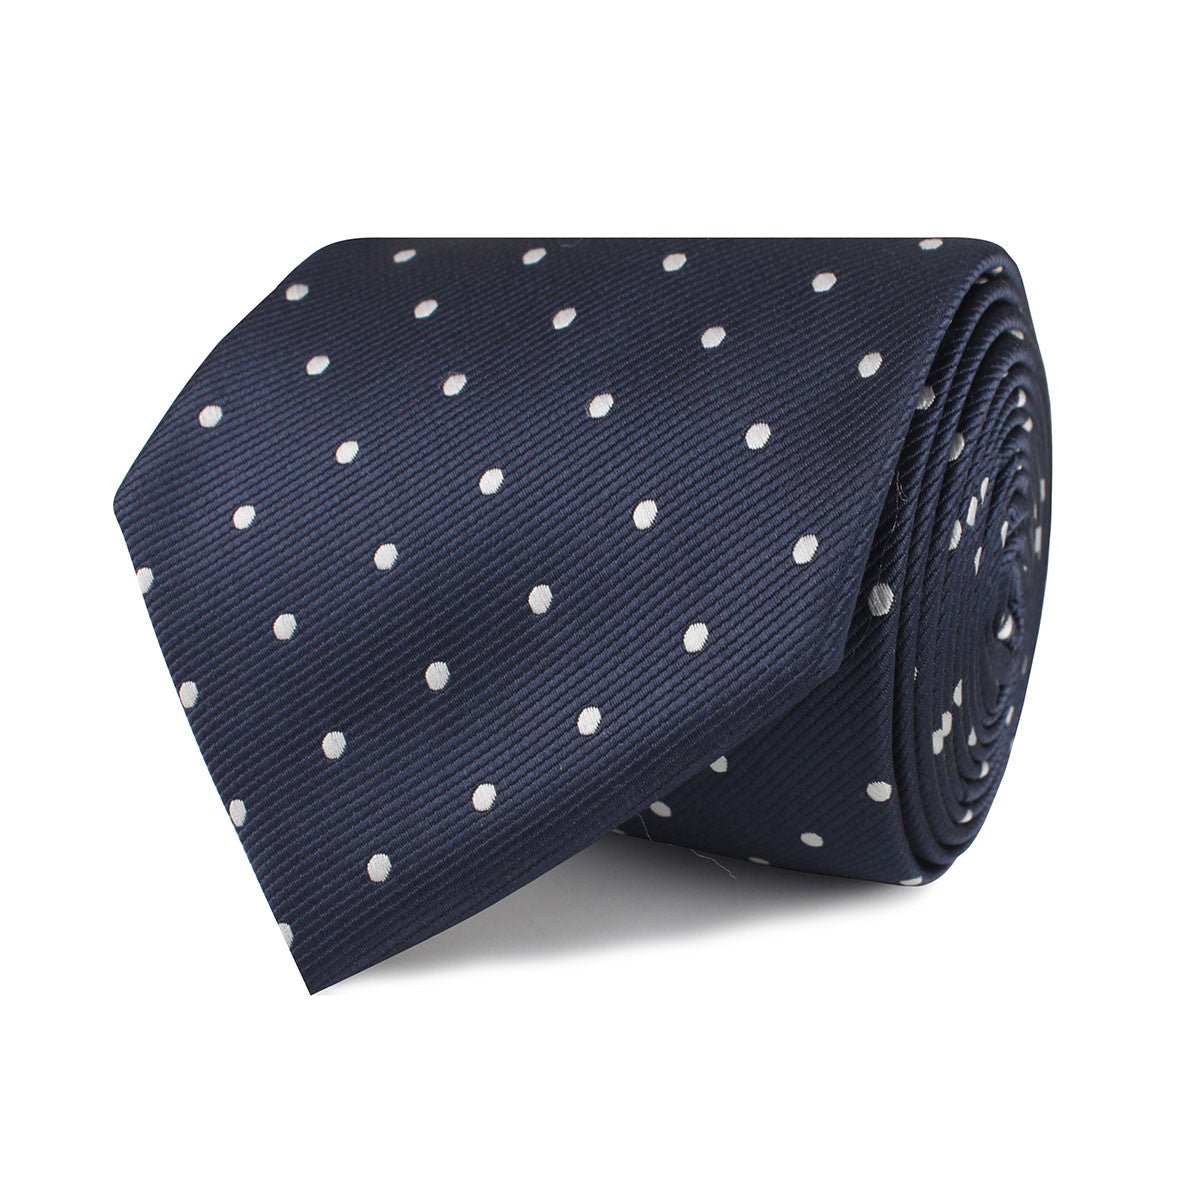 Dark Midnight Blue with White Polka Dots Necktie | Tie Ties Thick Wide ...